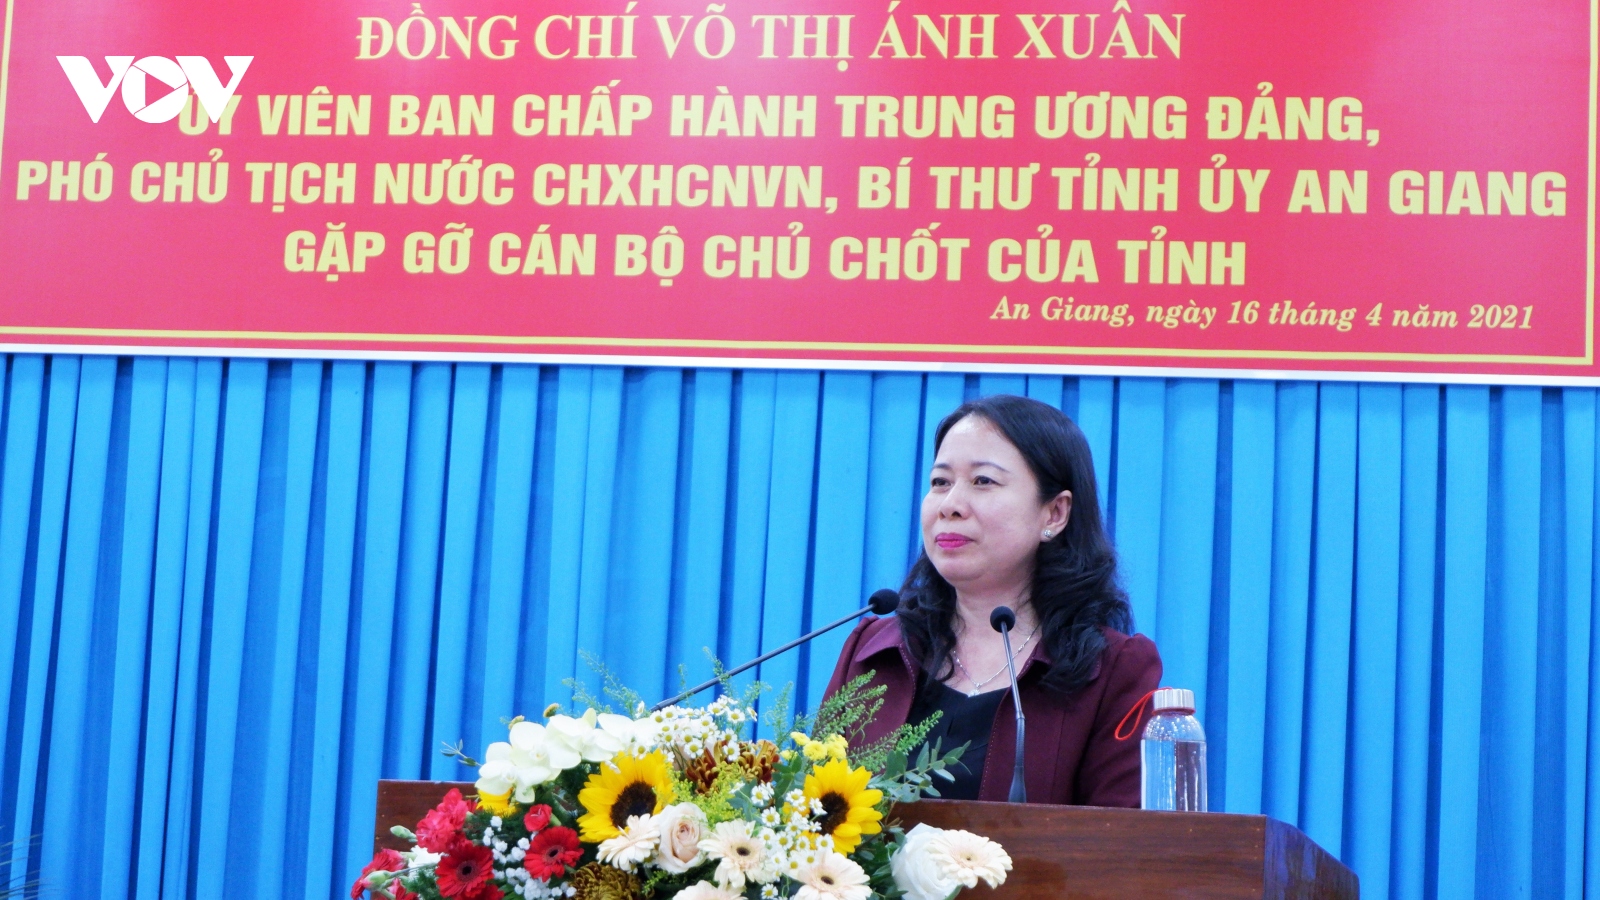 Phó Chủ tịch nước Võ Thị Ánh Xuân gặp mặt cán bộ chủ chốt tỉnh An Giang 